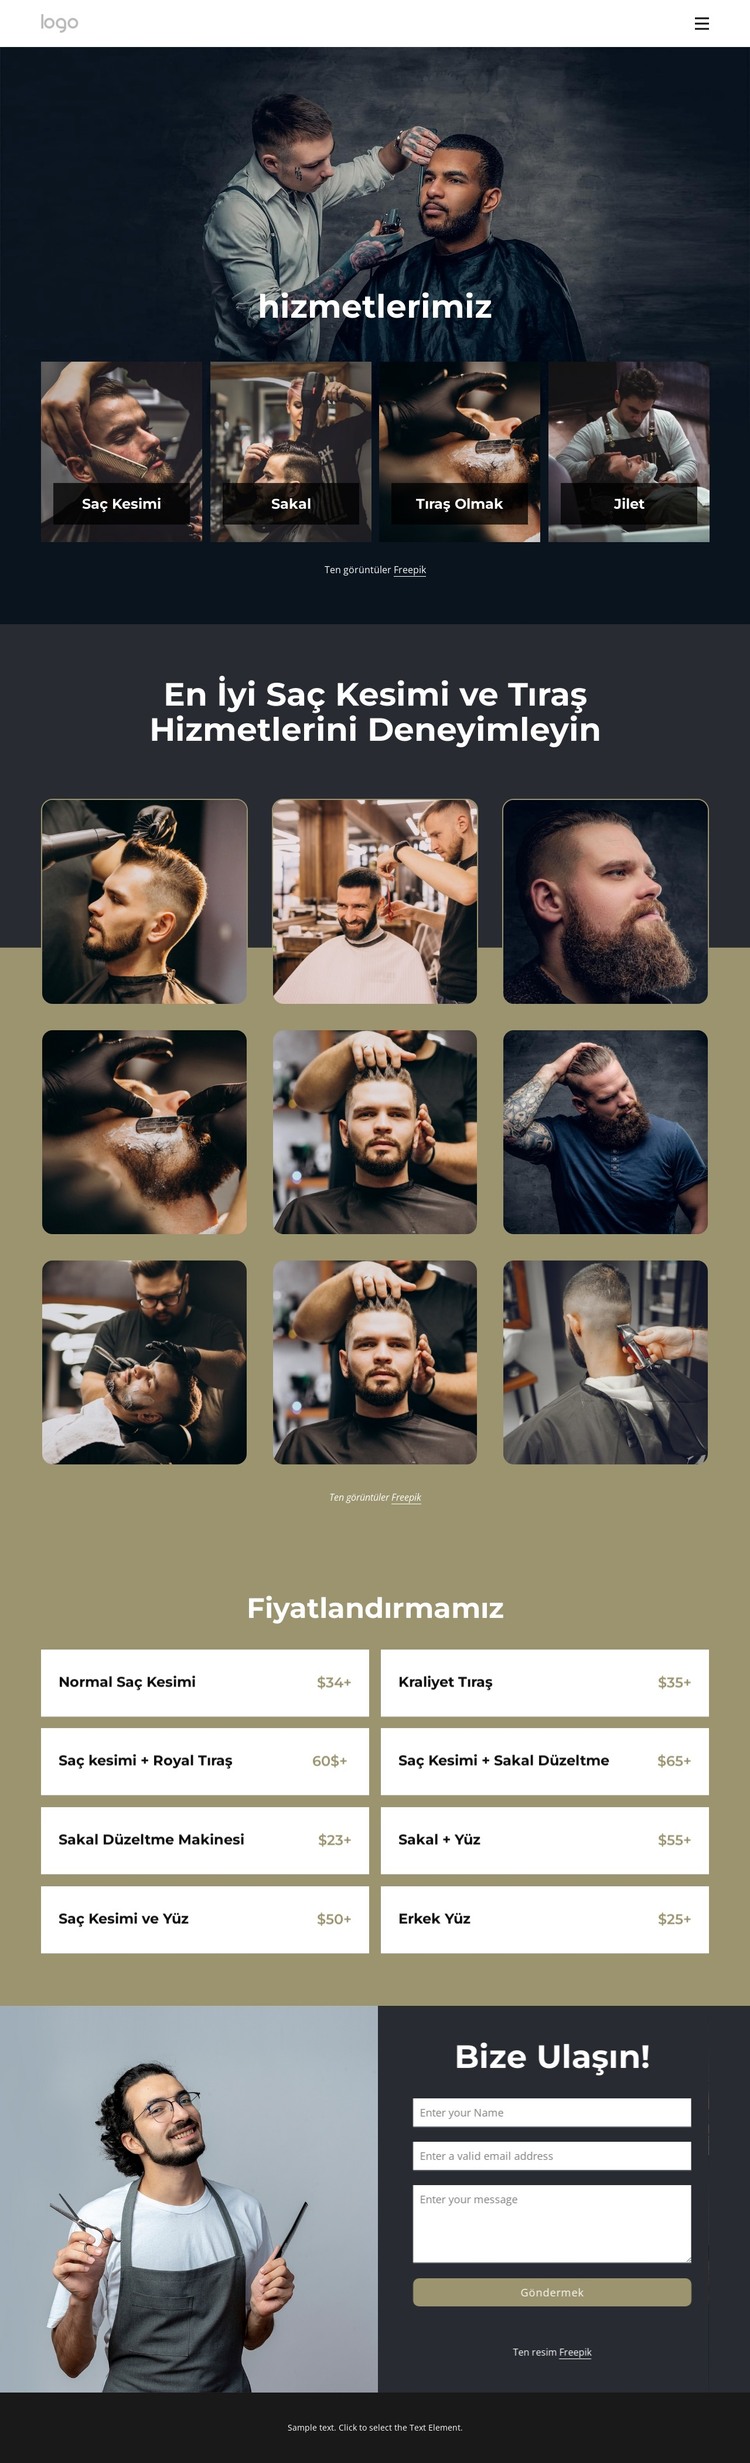 En iyi saç kesimi ve tıraş hizmetleri HTML Şablonu